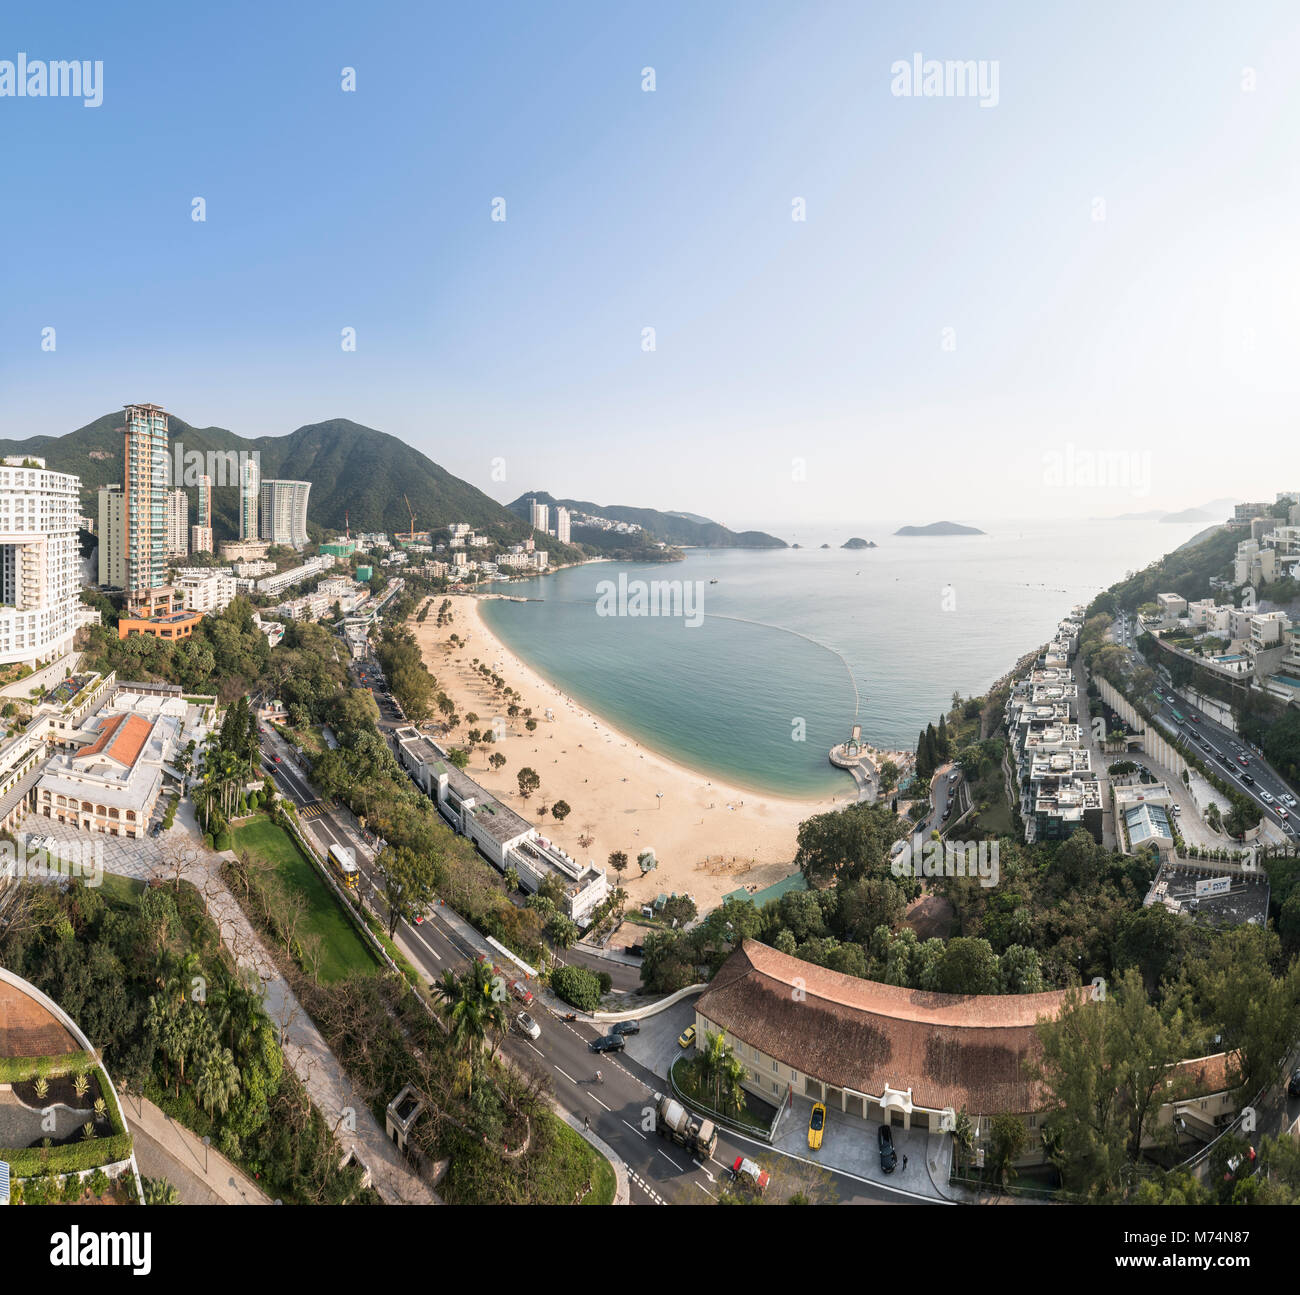 View of the beach at Repulse Bay. Hong Kong. Stock Photo